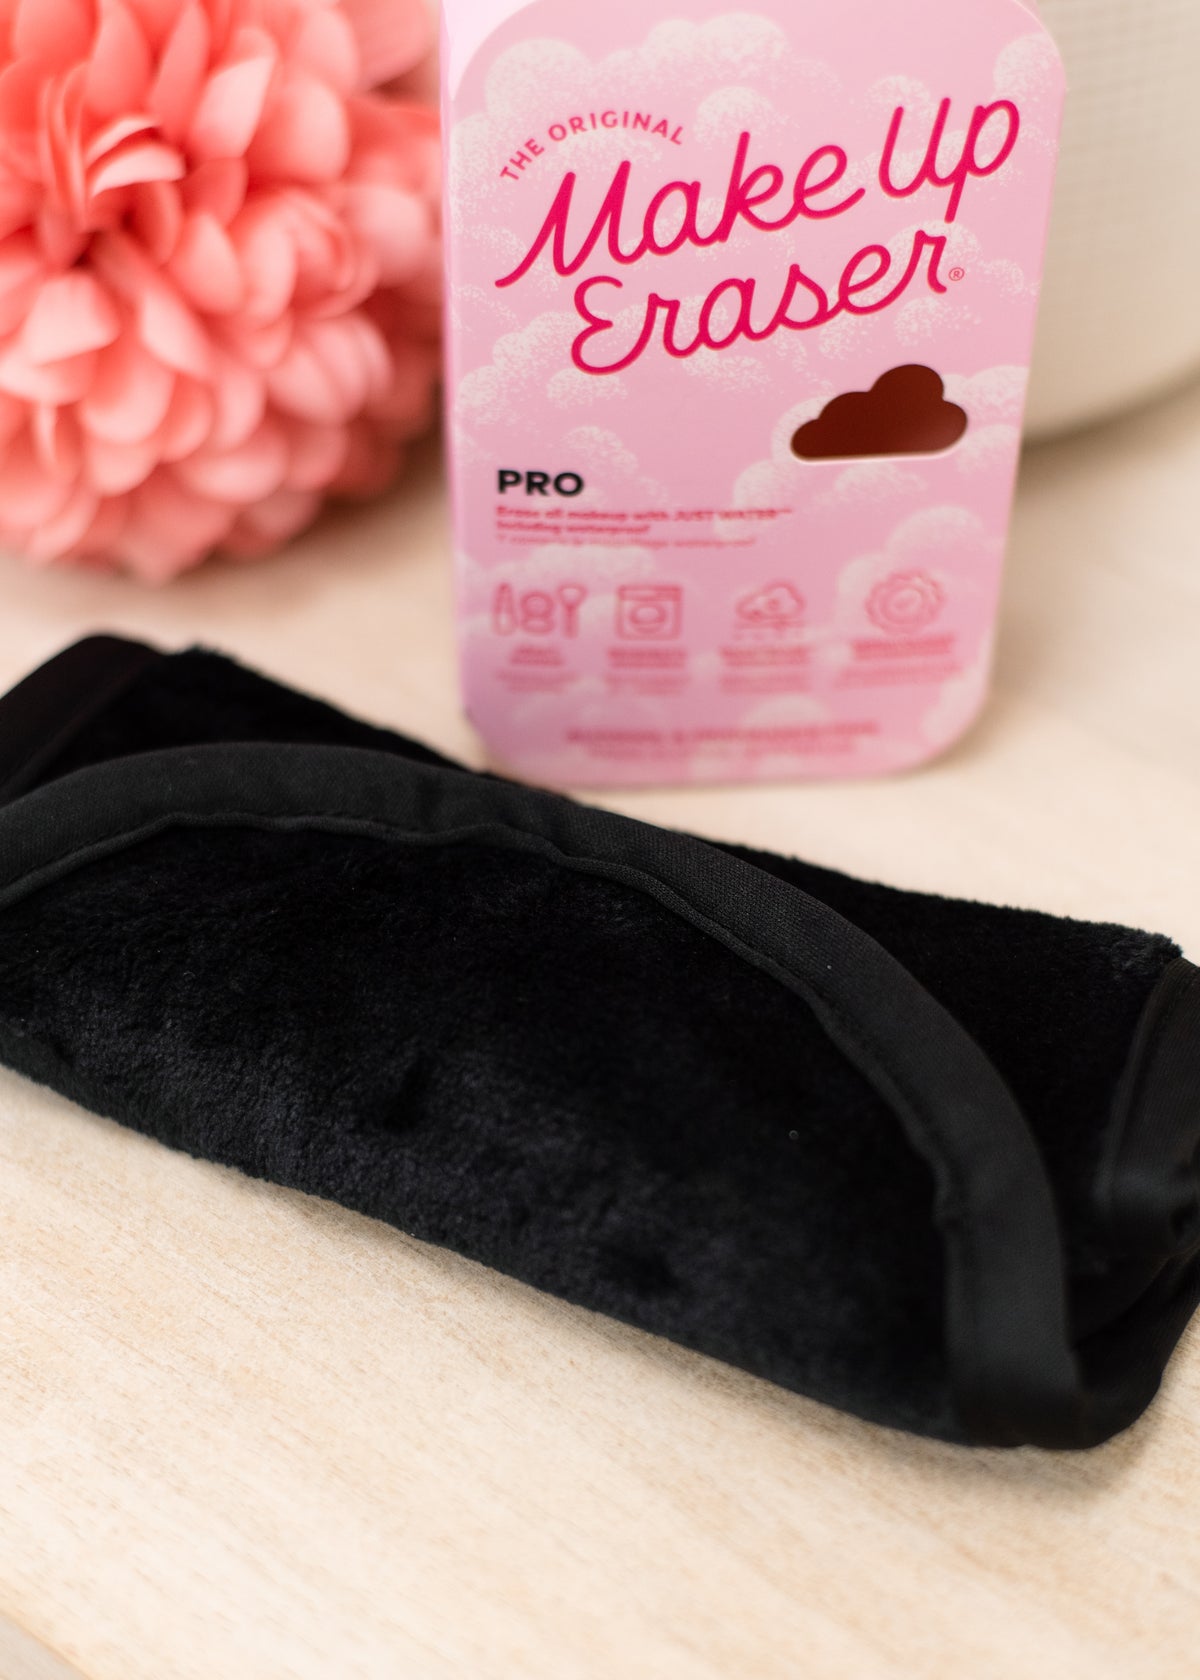 The Chic Black Pro Makeup Eraser